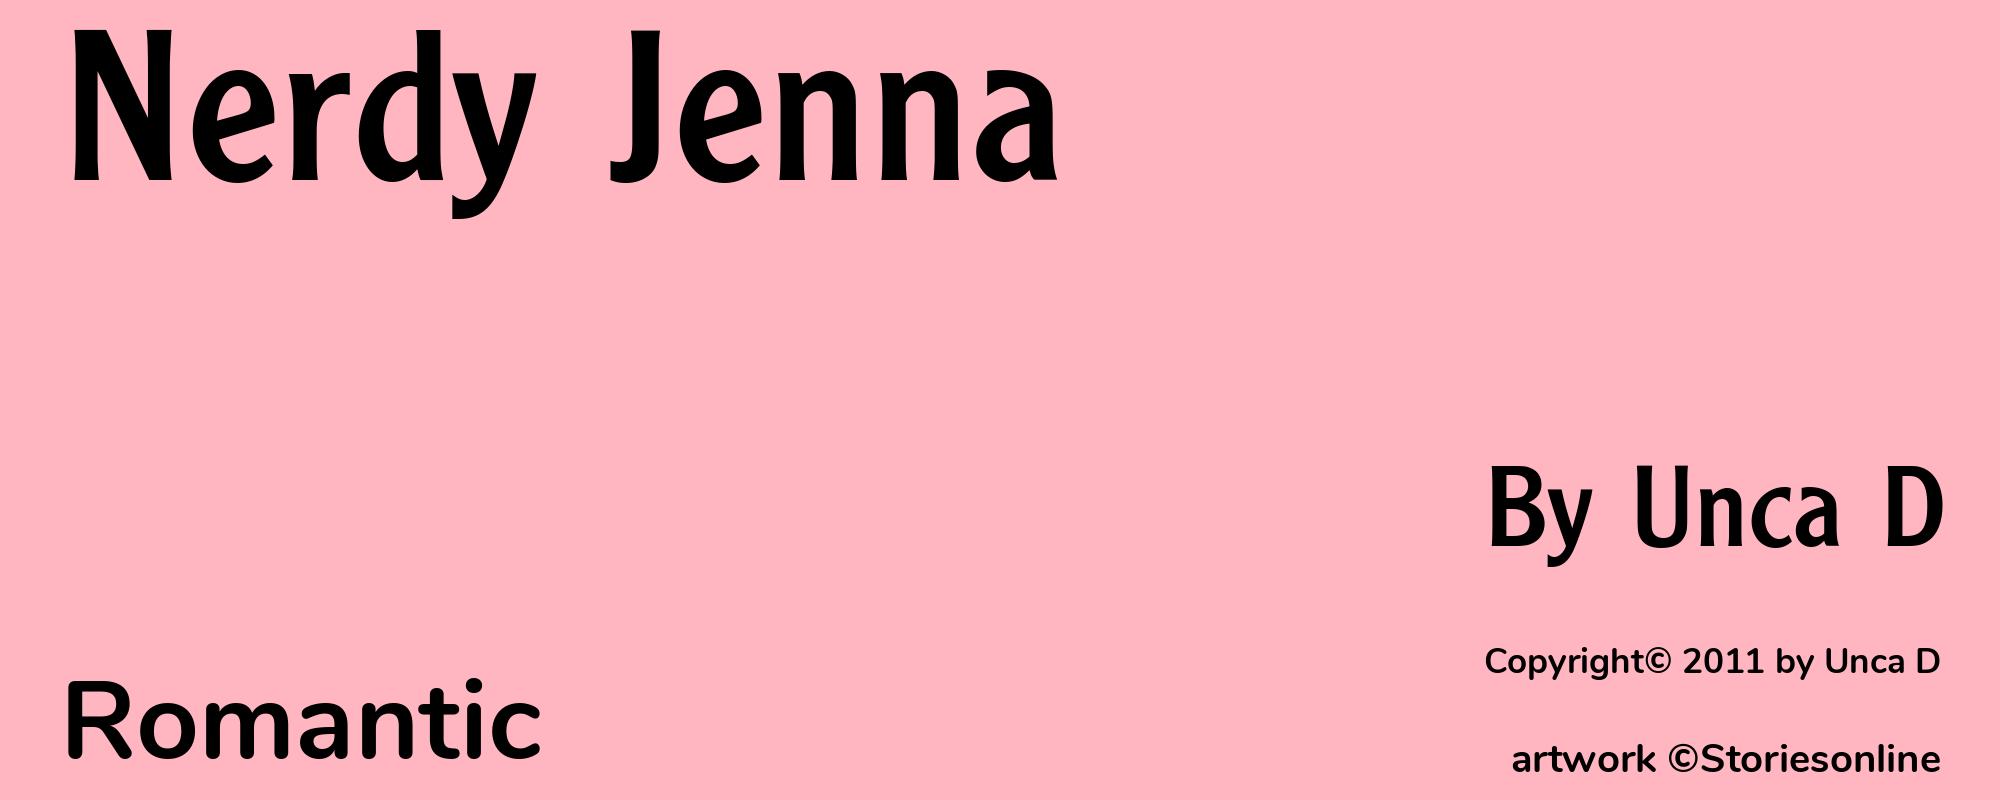 Nerdy Jenna - Cover